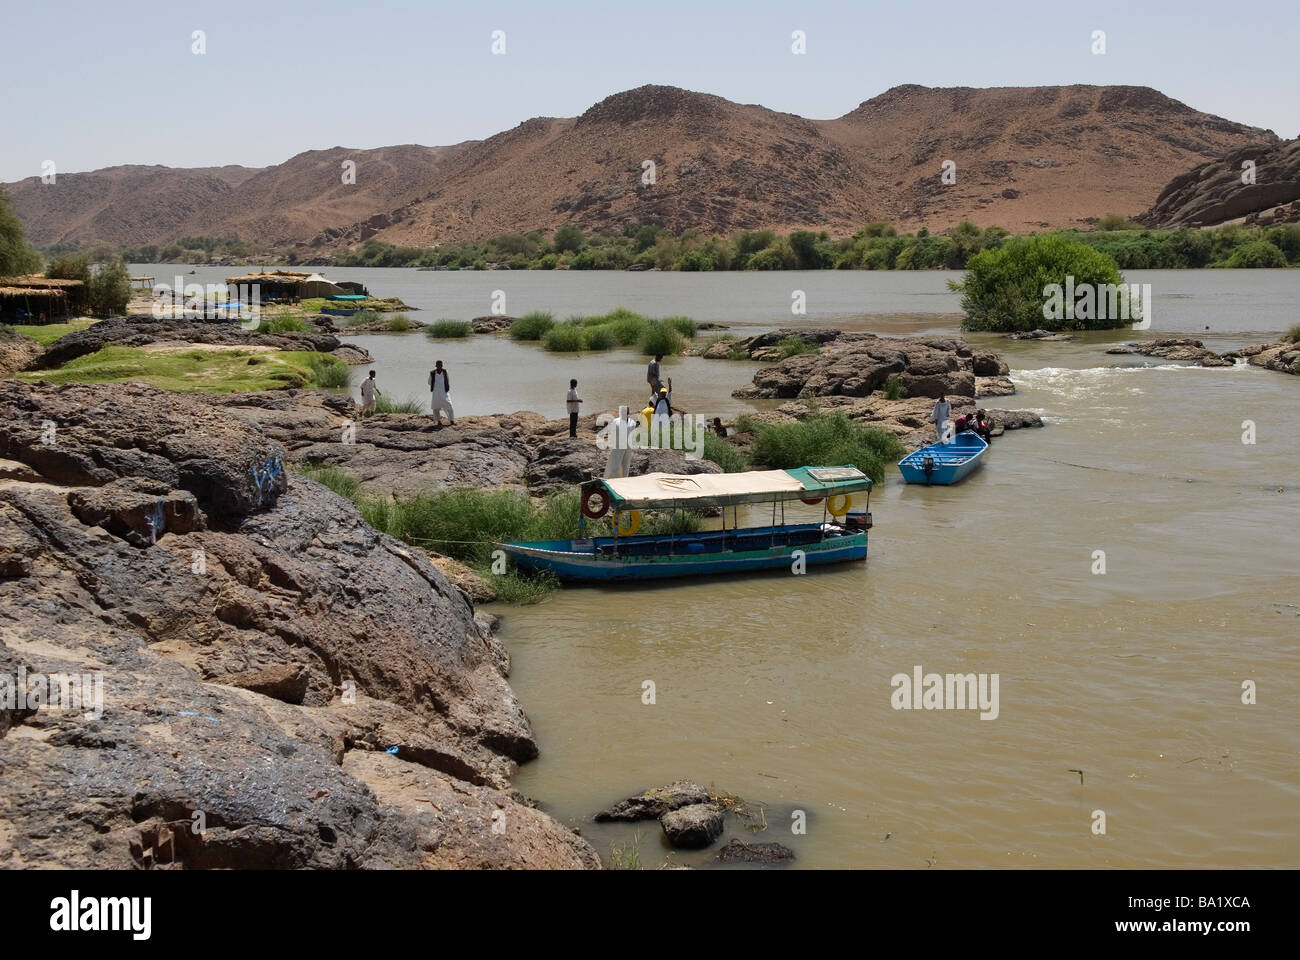 La célèbre sixième cataracte du Nil se trouve à environ une heure au nord de Khartoum Banque D'Images